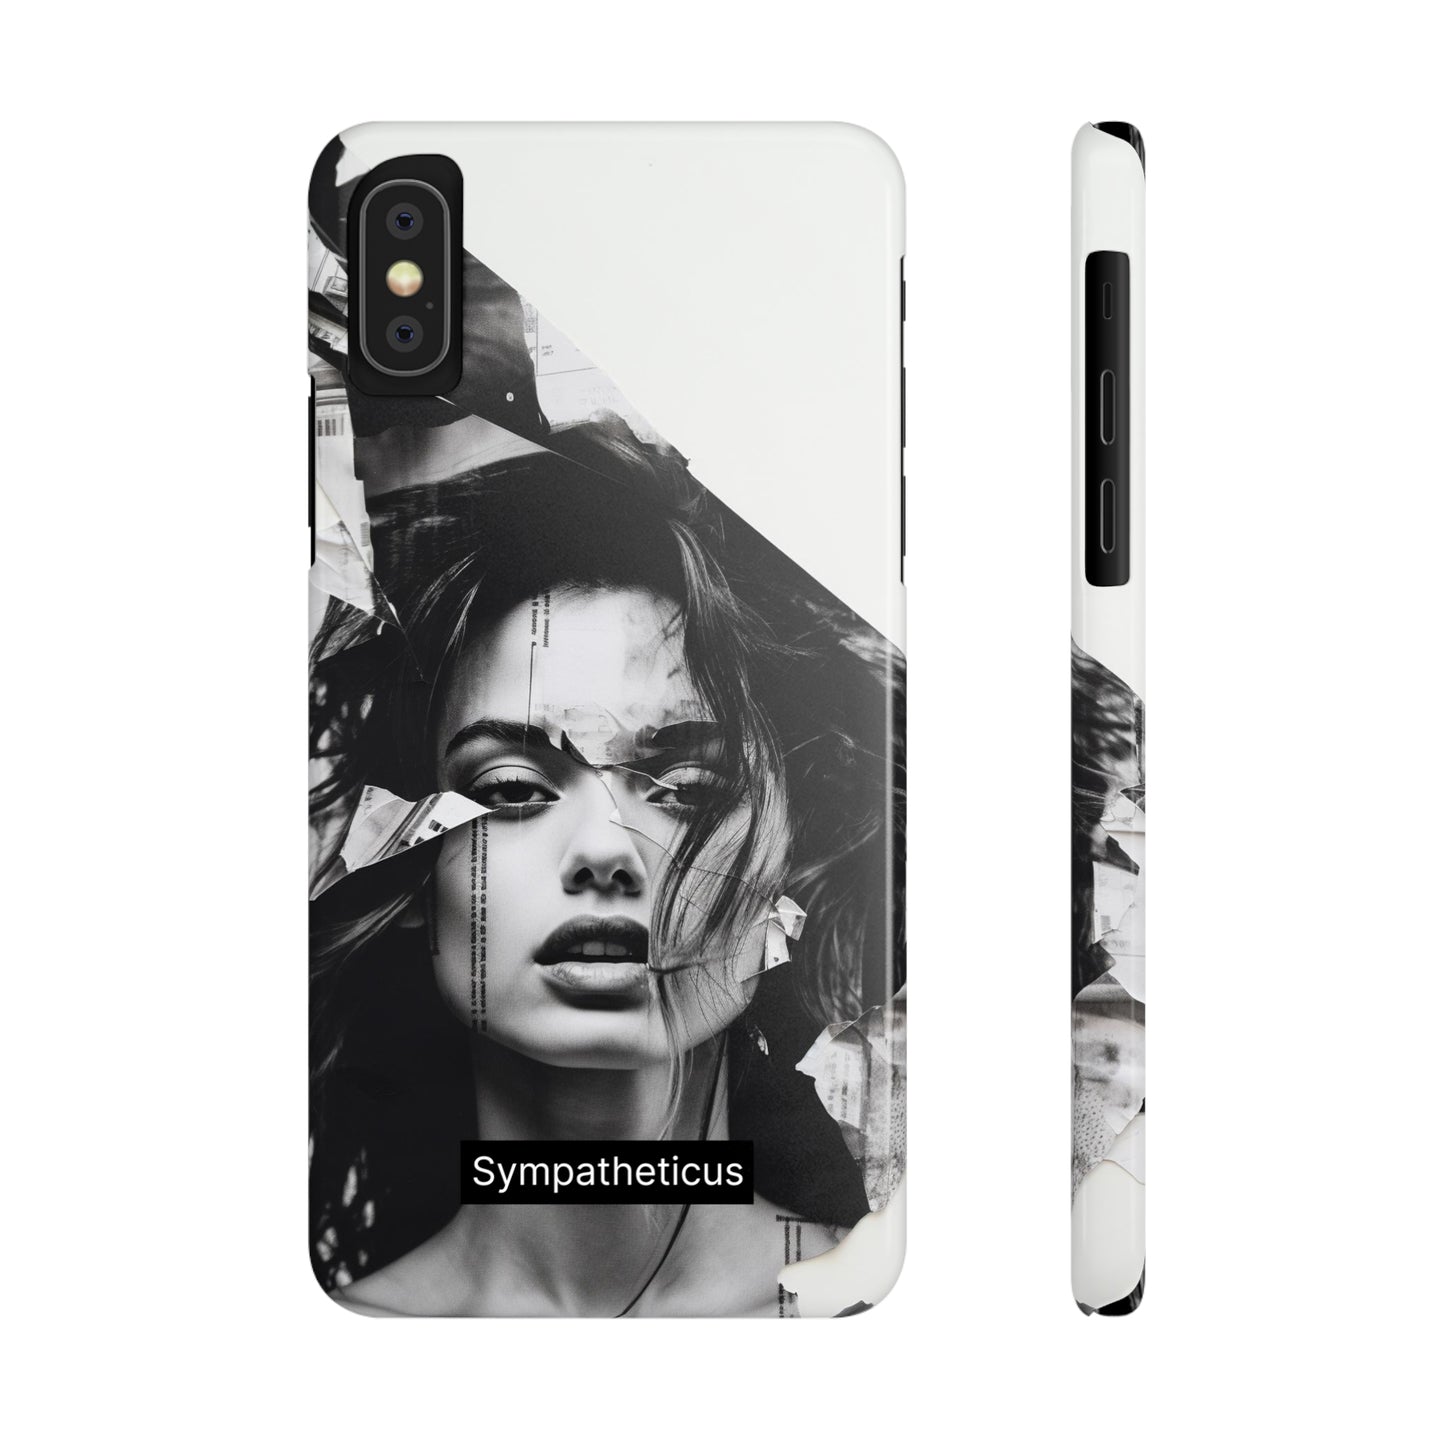 Iphone graphic case-20